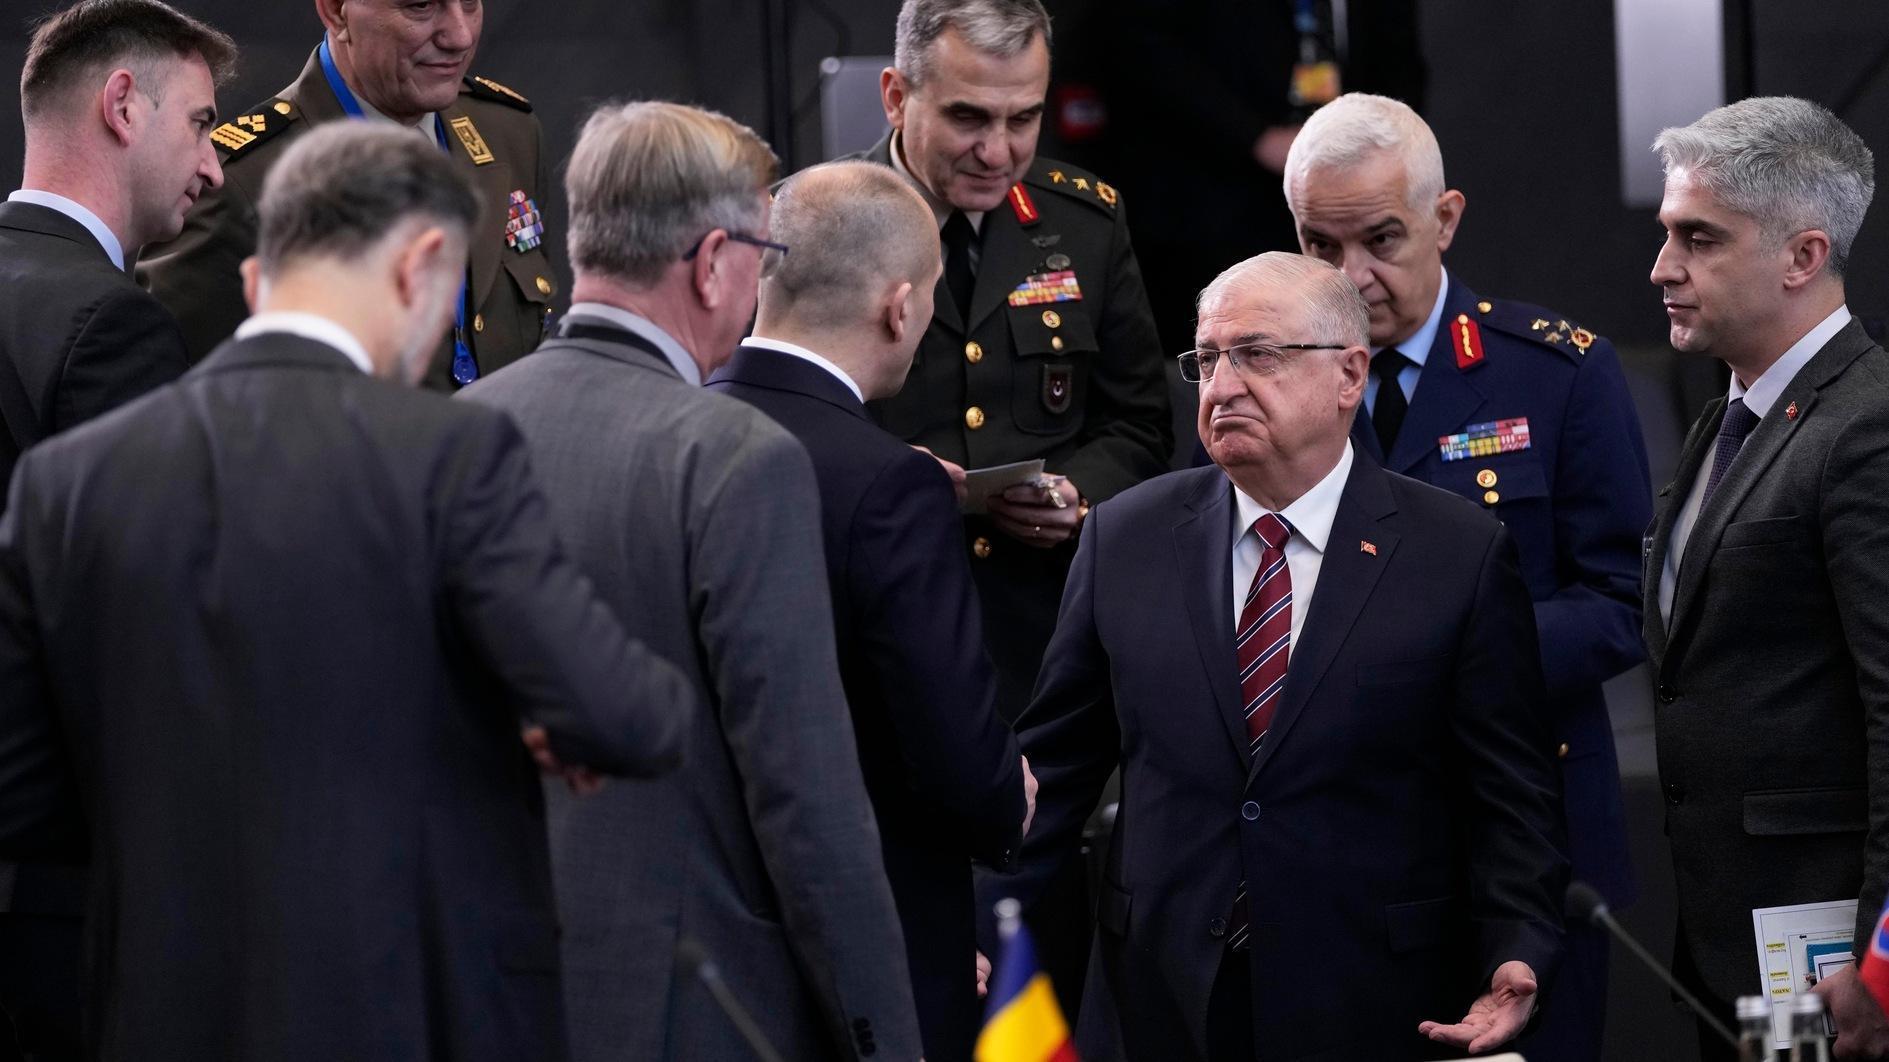 Türkiye sluit zich aan bij het door Duitsland geleide defensieschildproject